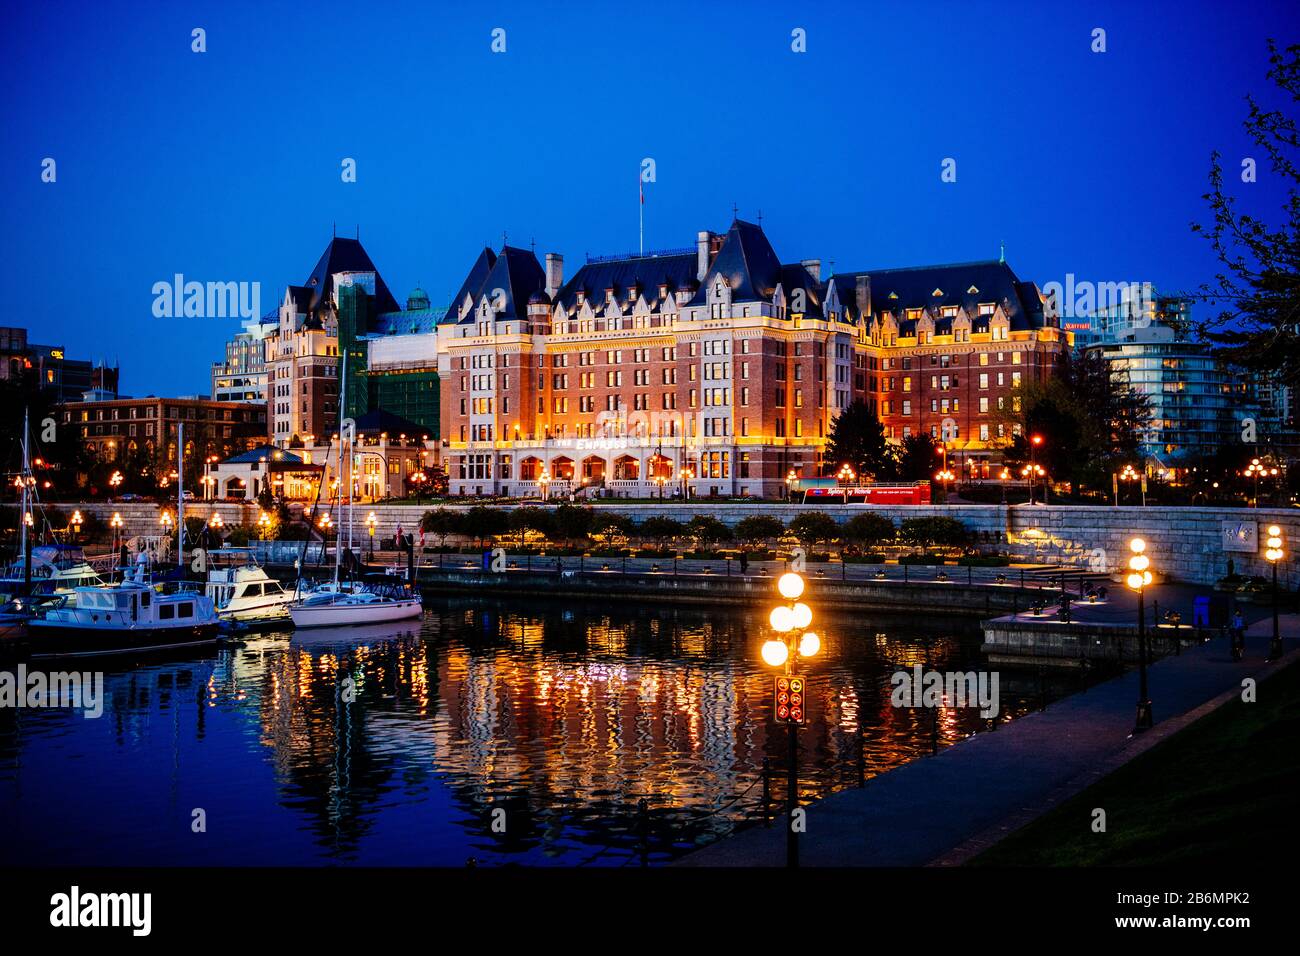 Blick auf das beleuchtete Hotel, Victoria, British Columbia, Kanada Stockfoto